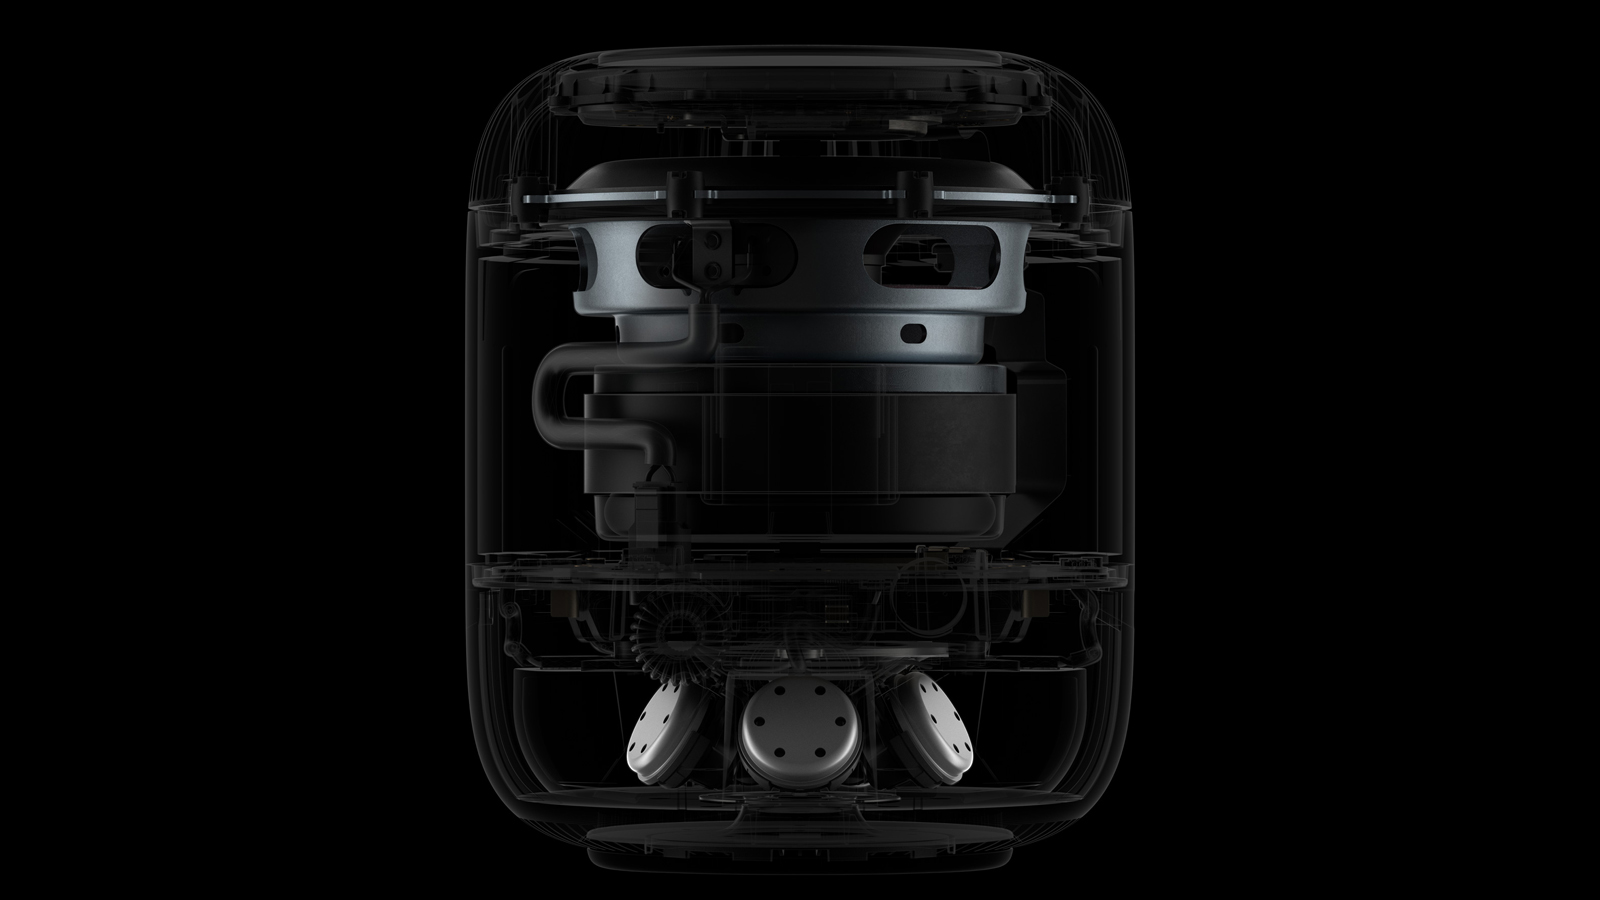 Apple HomePod speaker on black background